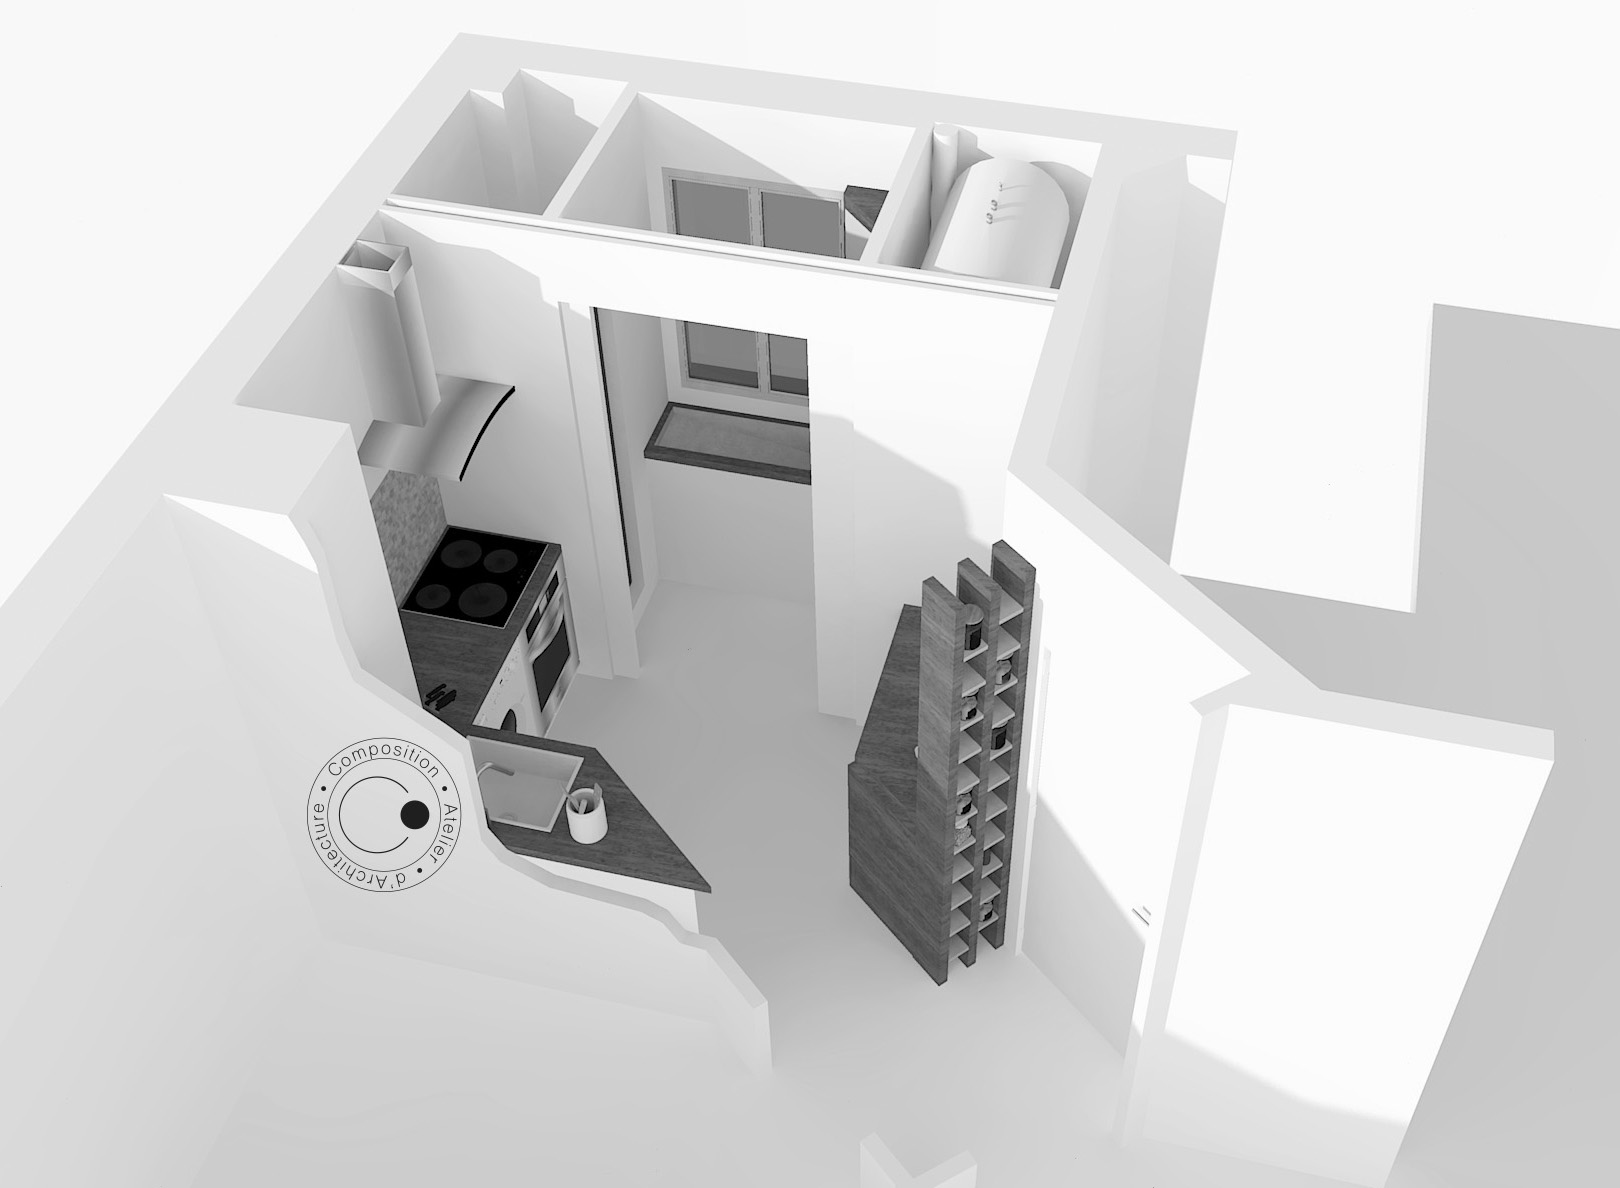 Bouton pour atteindre le descriptif du projet d'aménagement d'un appartement à Issy-les-Moulineaux • Composition Atelier d'Architecture